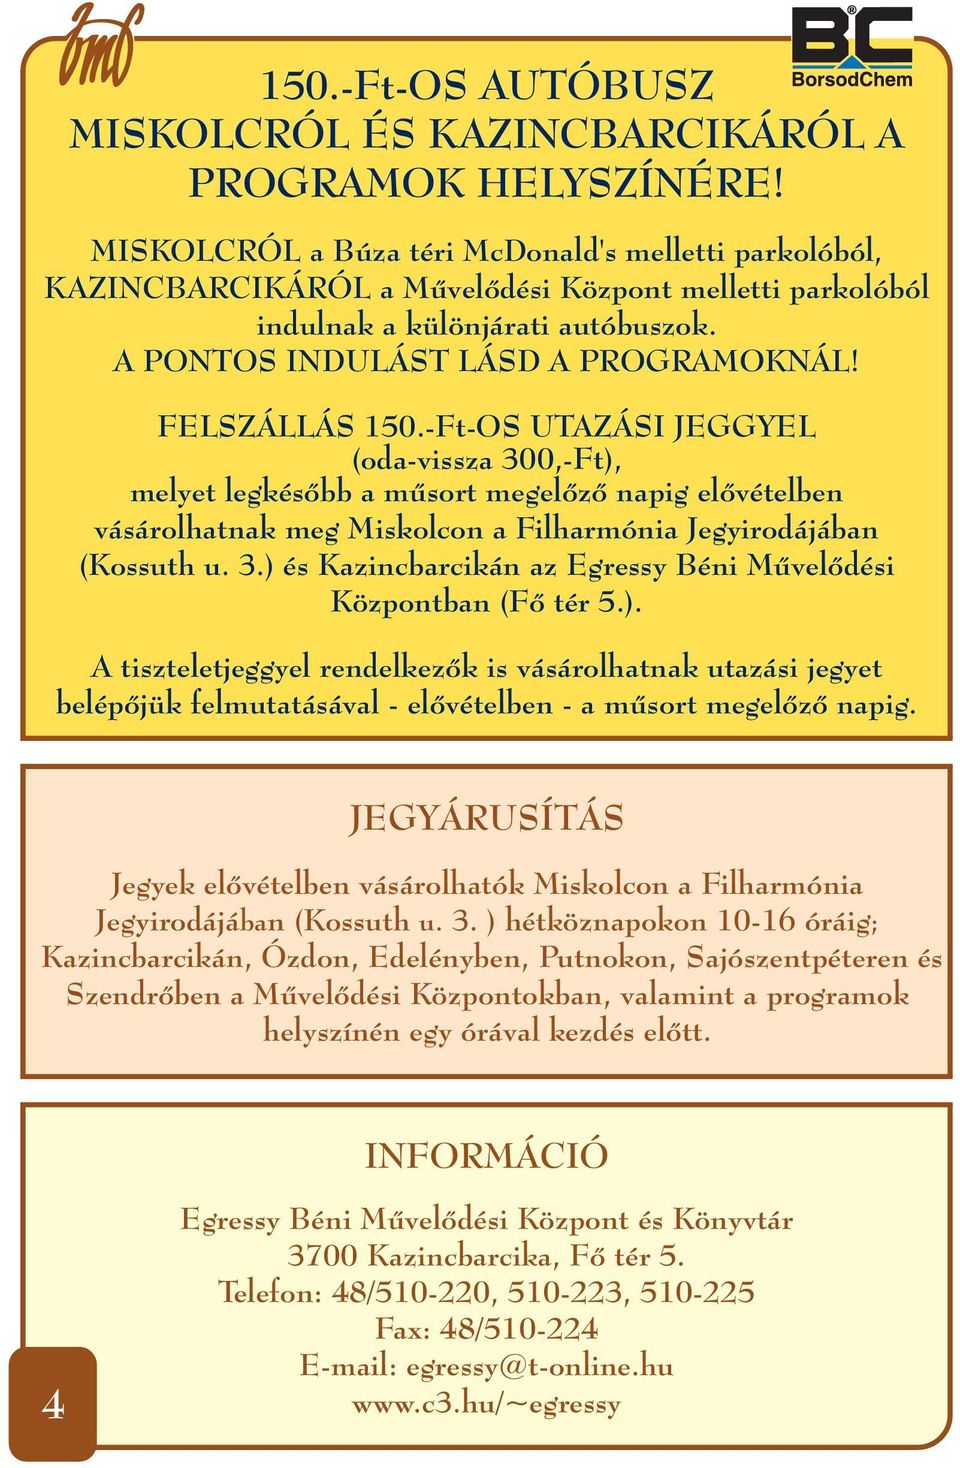 FELSZÁLLÁS 150.-Ft-OS UTAZÁSI JEGGYEL (oda-vissza 300,-Ft), melyet legkésőbb a műsort megelőző napig elővételben vásárolhatnak meg Miskolcon a Filharmónia Jegyirodájában (Kossuth u. 3.) és Kazincbarcikán az Egressy Béni Művelődési Központban (Fő tér 5.